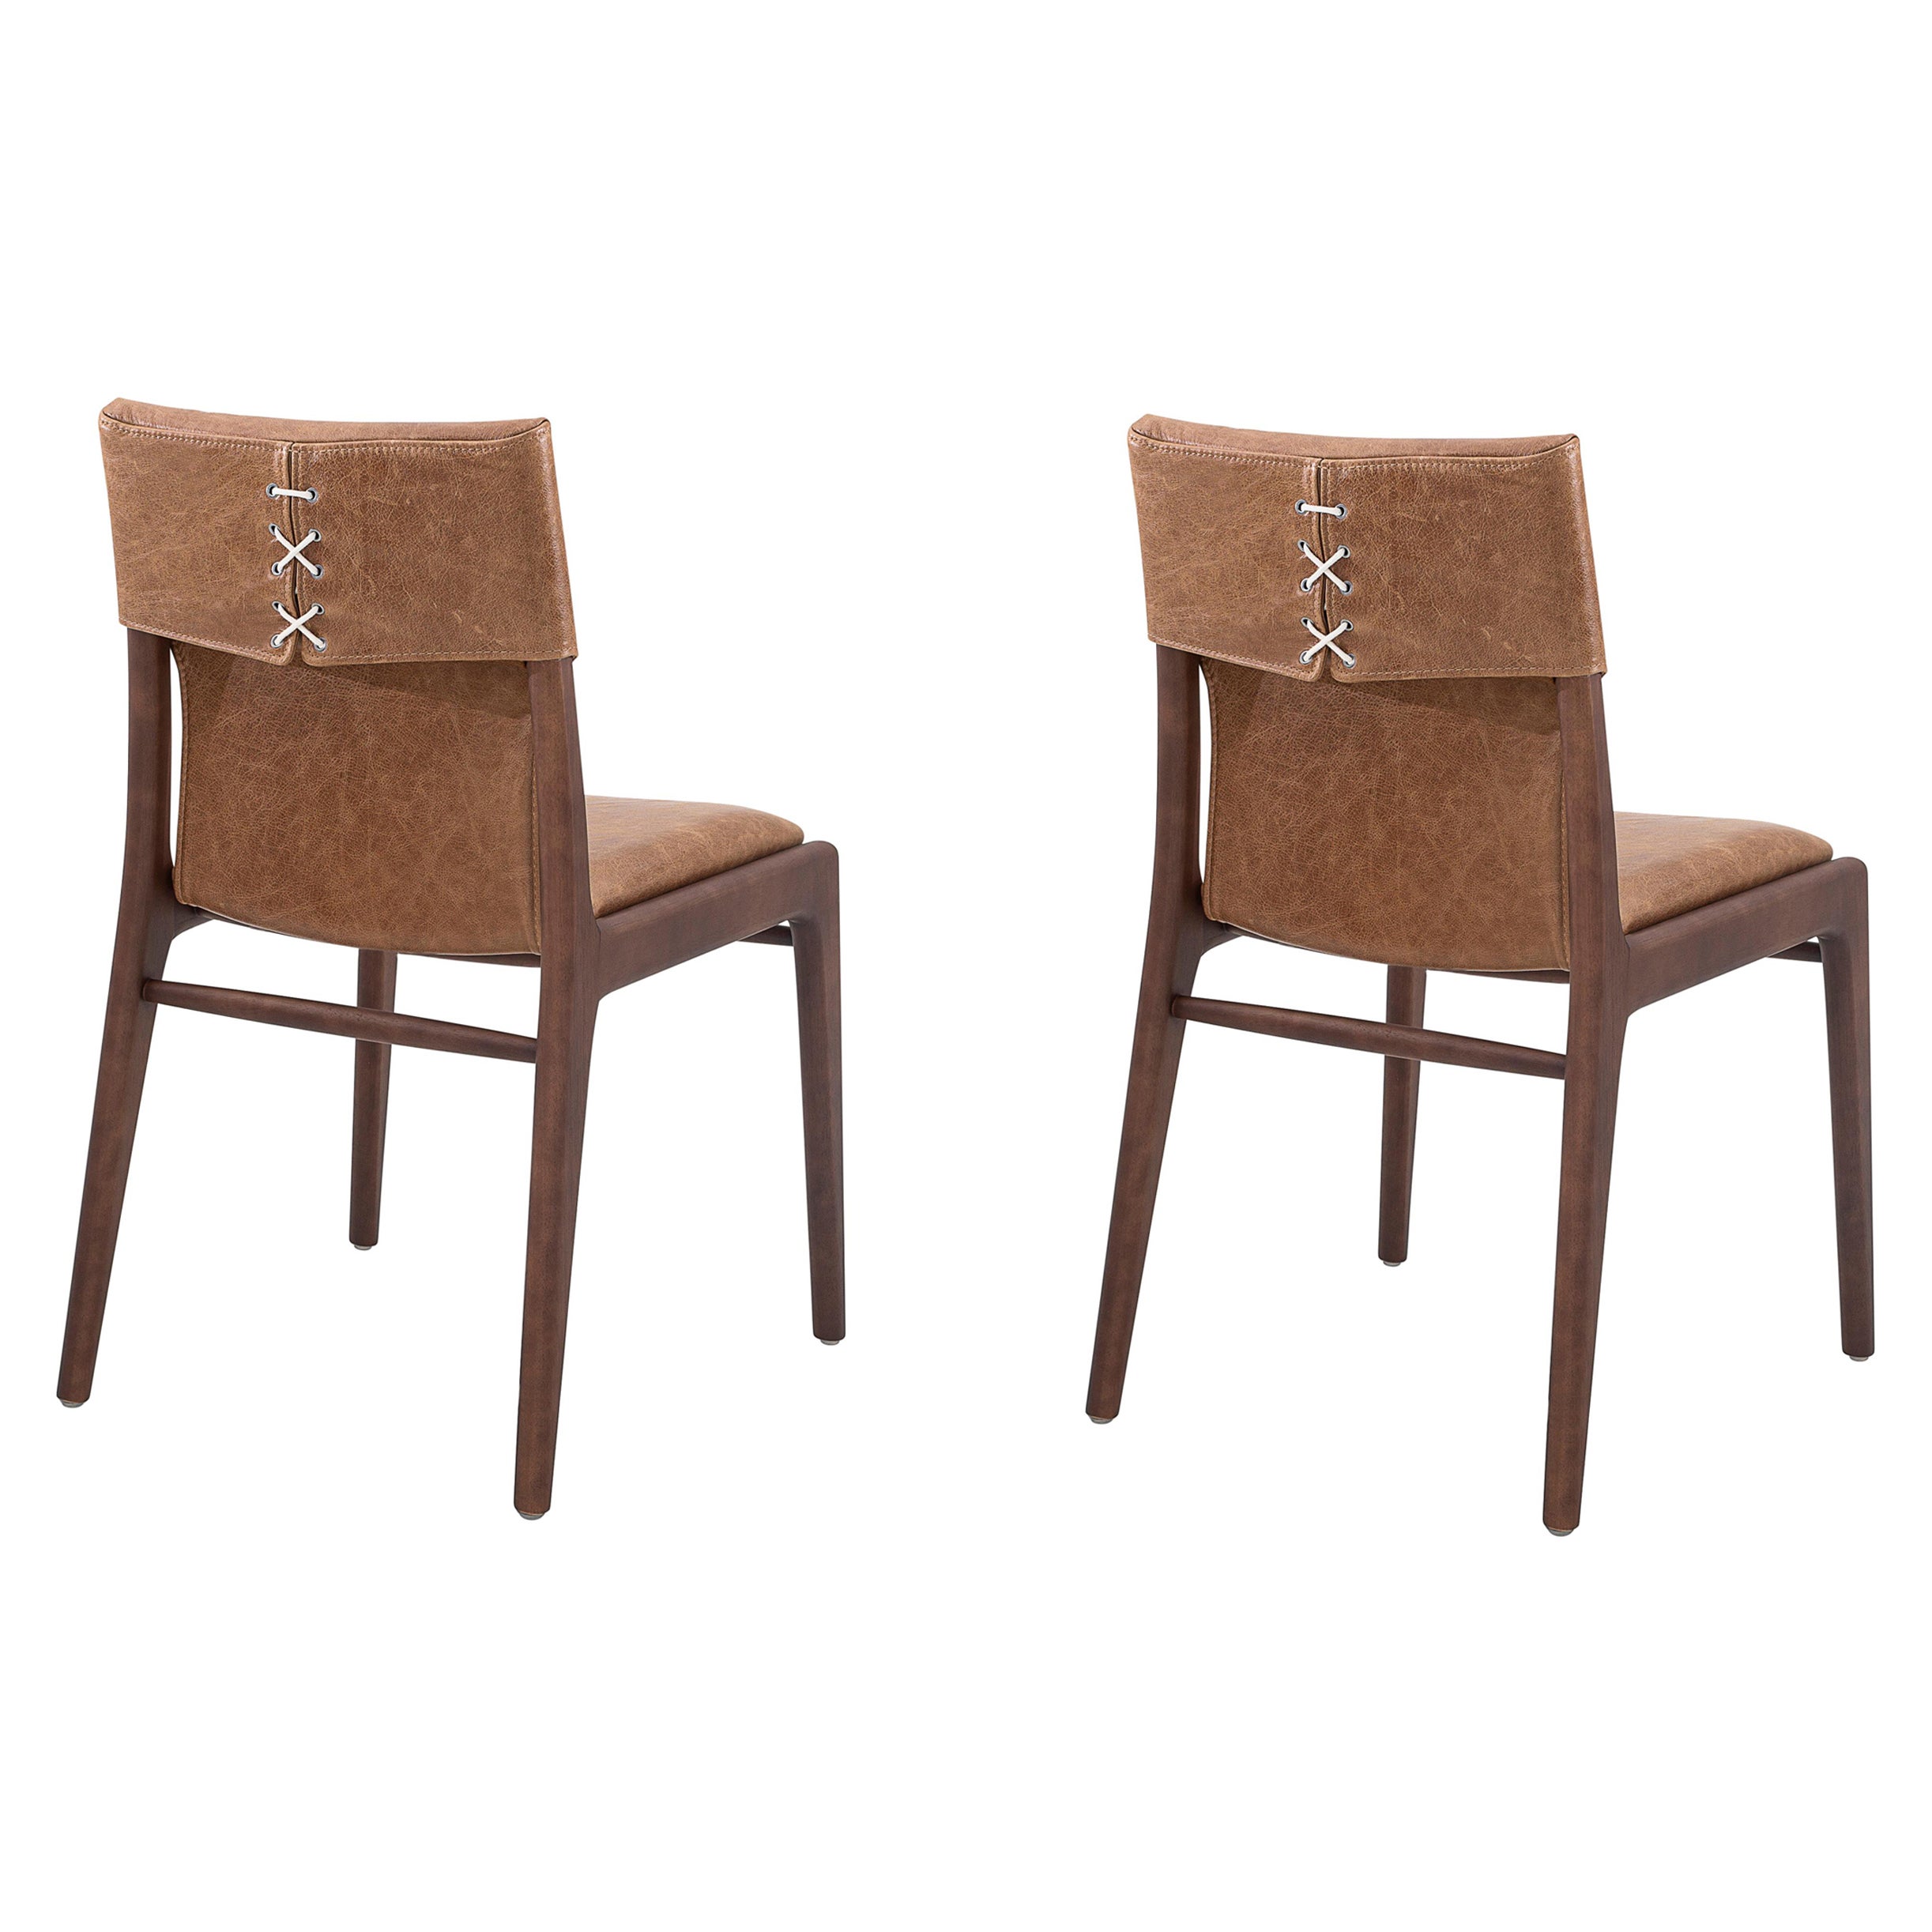 Der legendäre Uultis-Designer Sergio Batista hat den Tress-Esszimmerstuhl mit brauner Lederpolsterung und Walnussholzoberfläche entworfen. Seine Kreationen sind ein Synonym für Stil, Eleganz, Komfort und Qualität. Mit dem Tress-Stuhl hat Herr